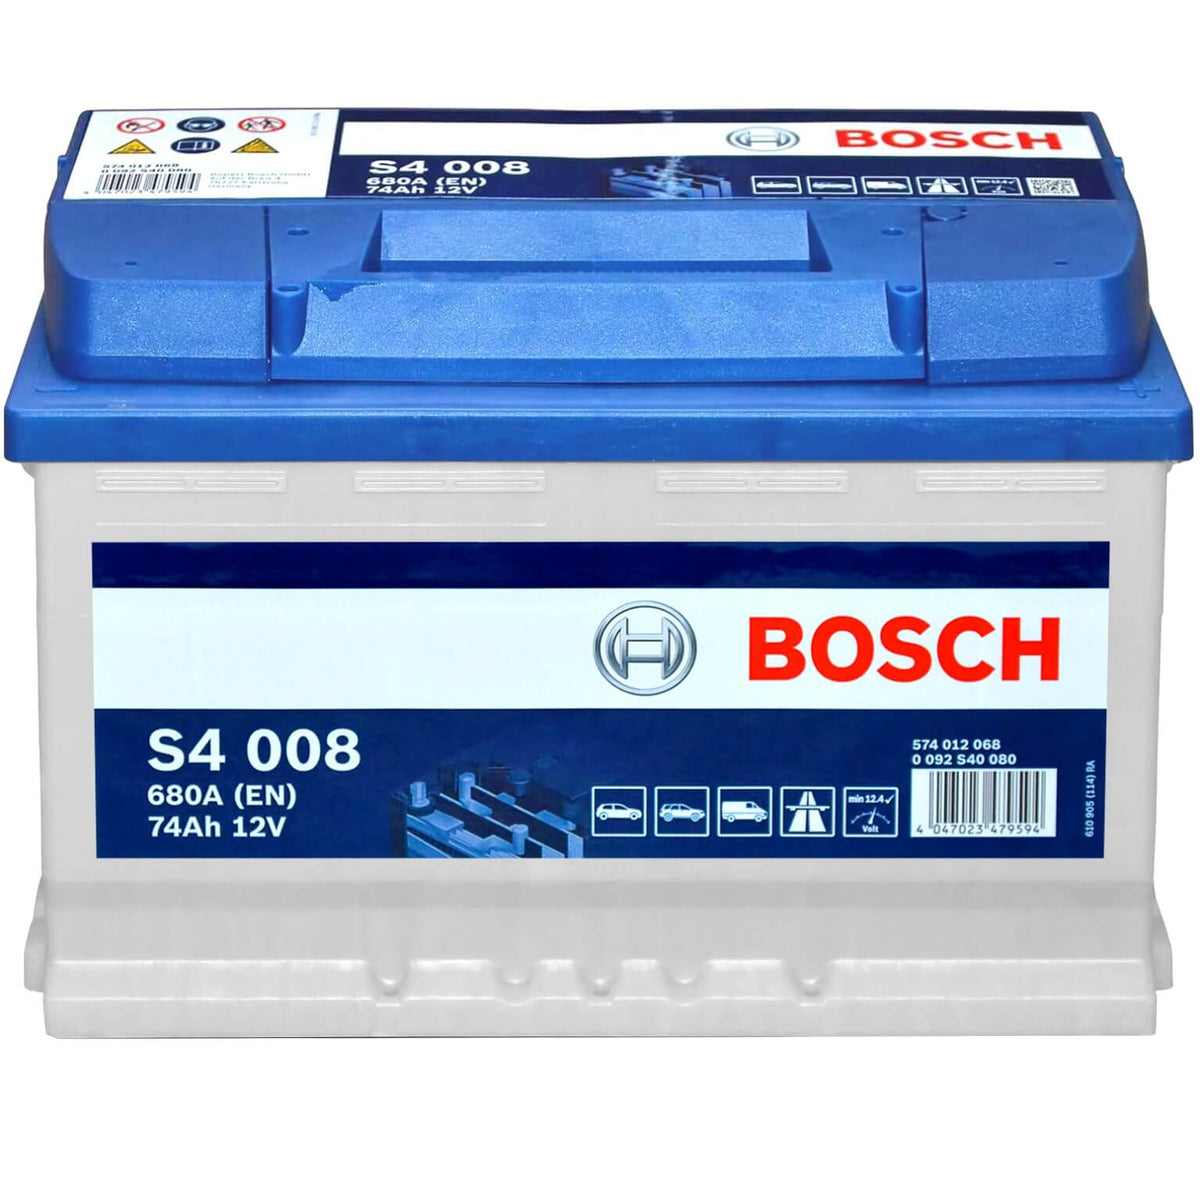 Bosch S4008 12V 74Ah 680A/EN